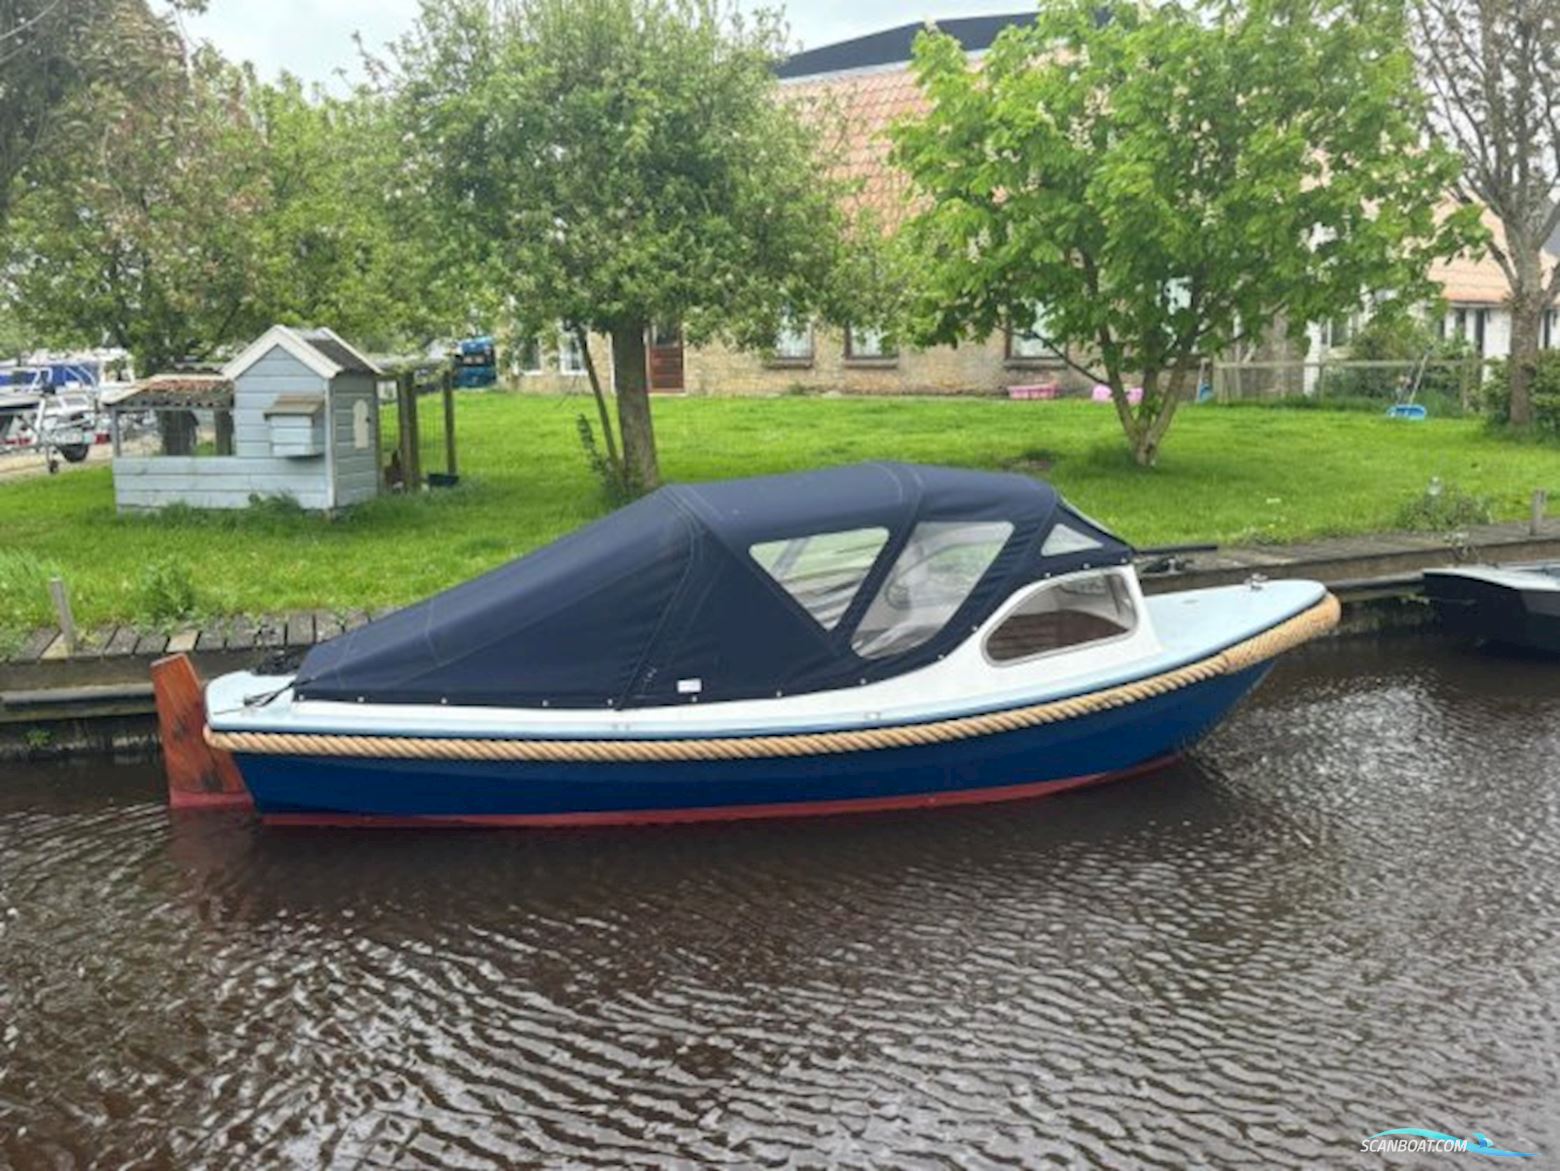 Schiffart Vlet 600 * Motor boat 2000, The Netherlands